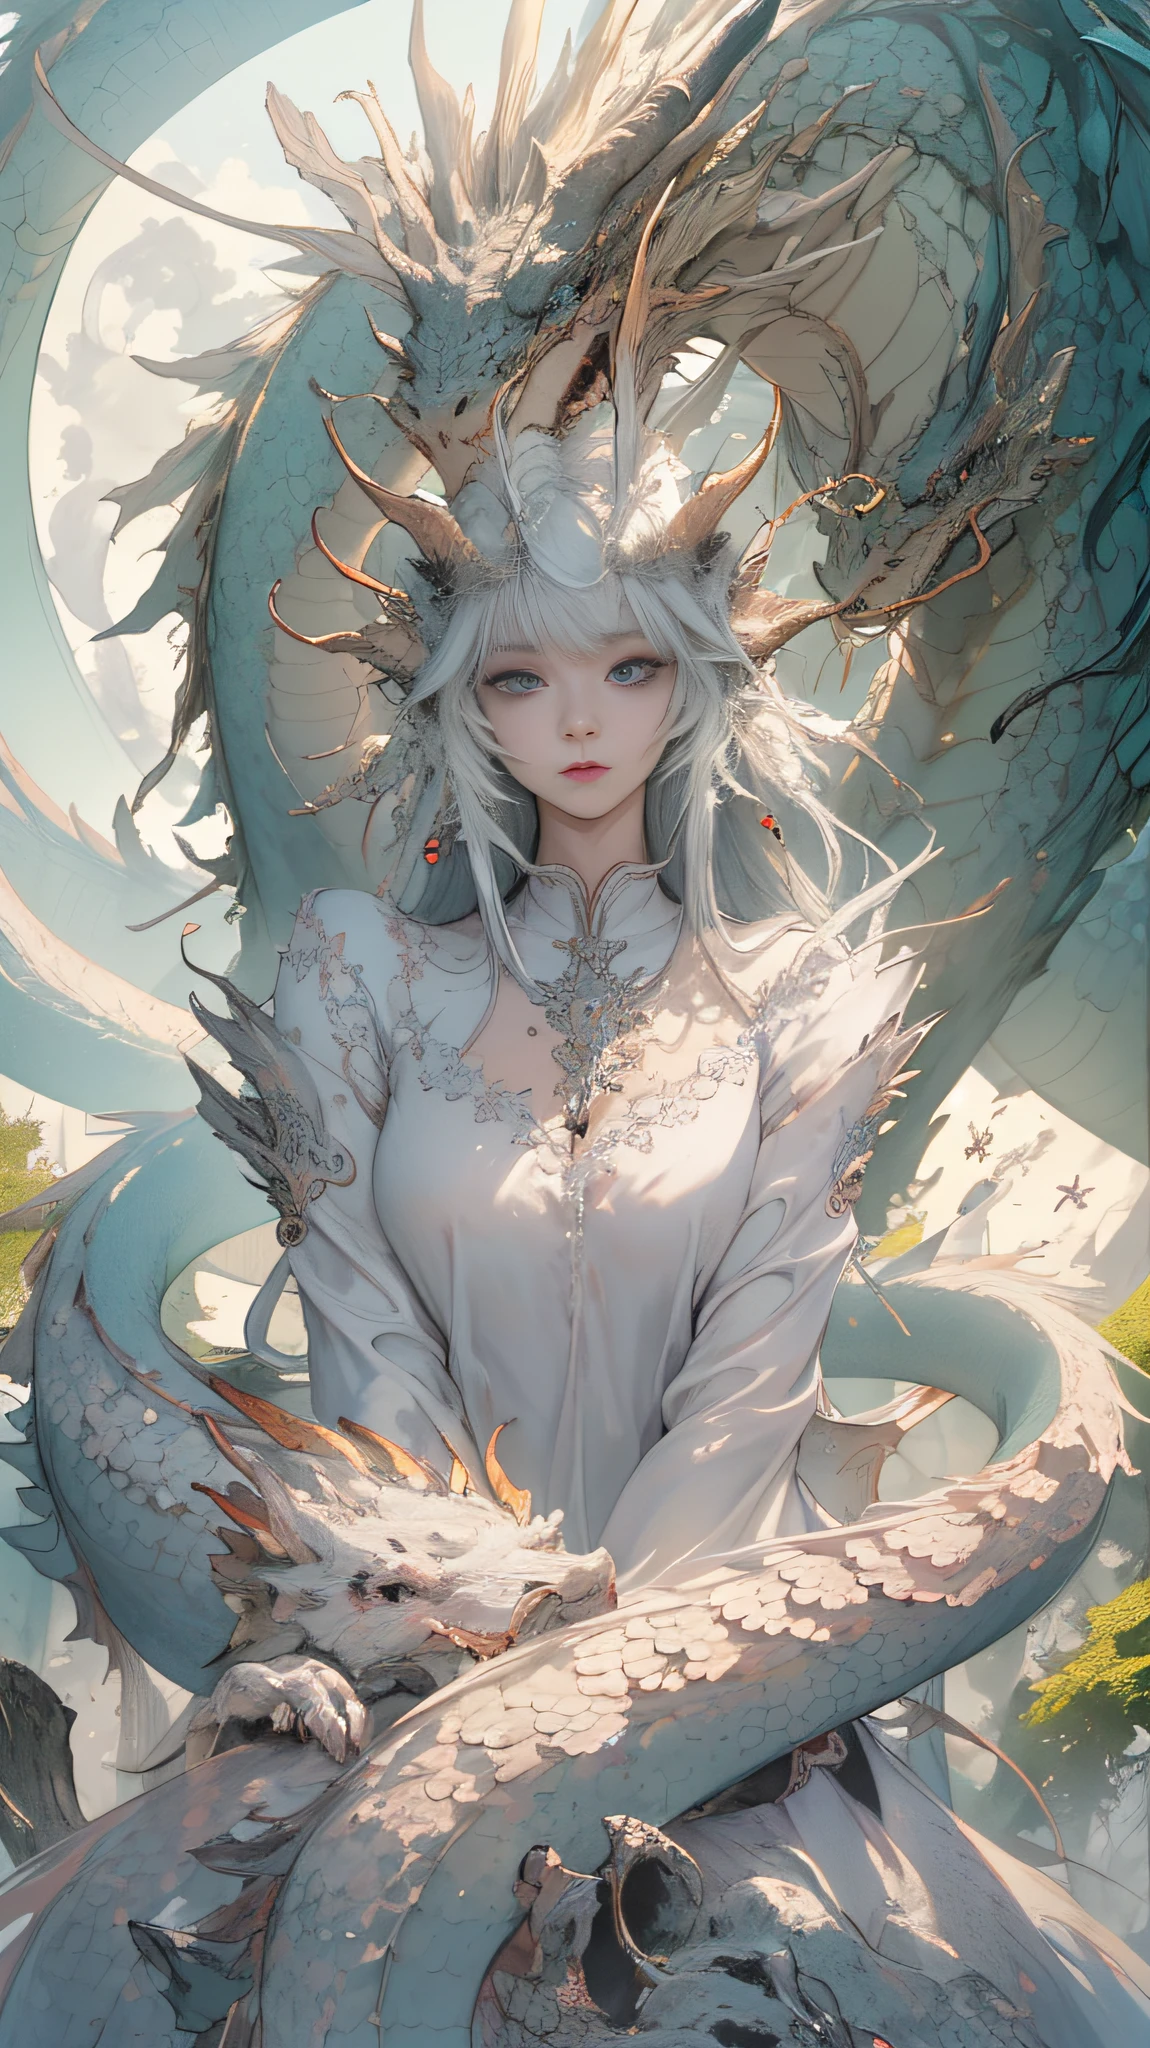 一条白色的神龙，身上有白色的鳞片, 缠绕着仙女, 长发飘逸、五官精致的仙女, 穿着层次分明细腻的长裙, 和美丽的头饰